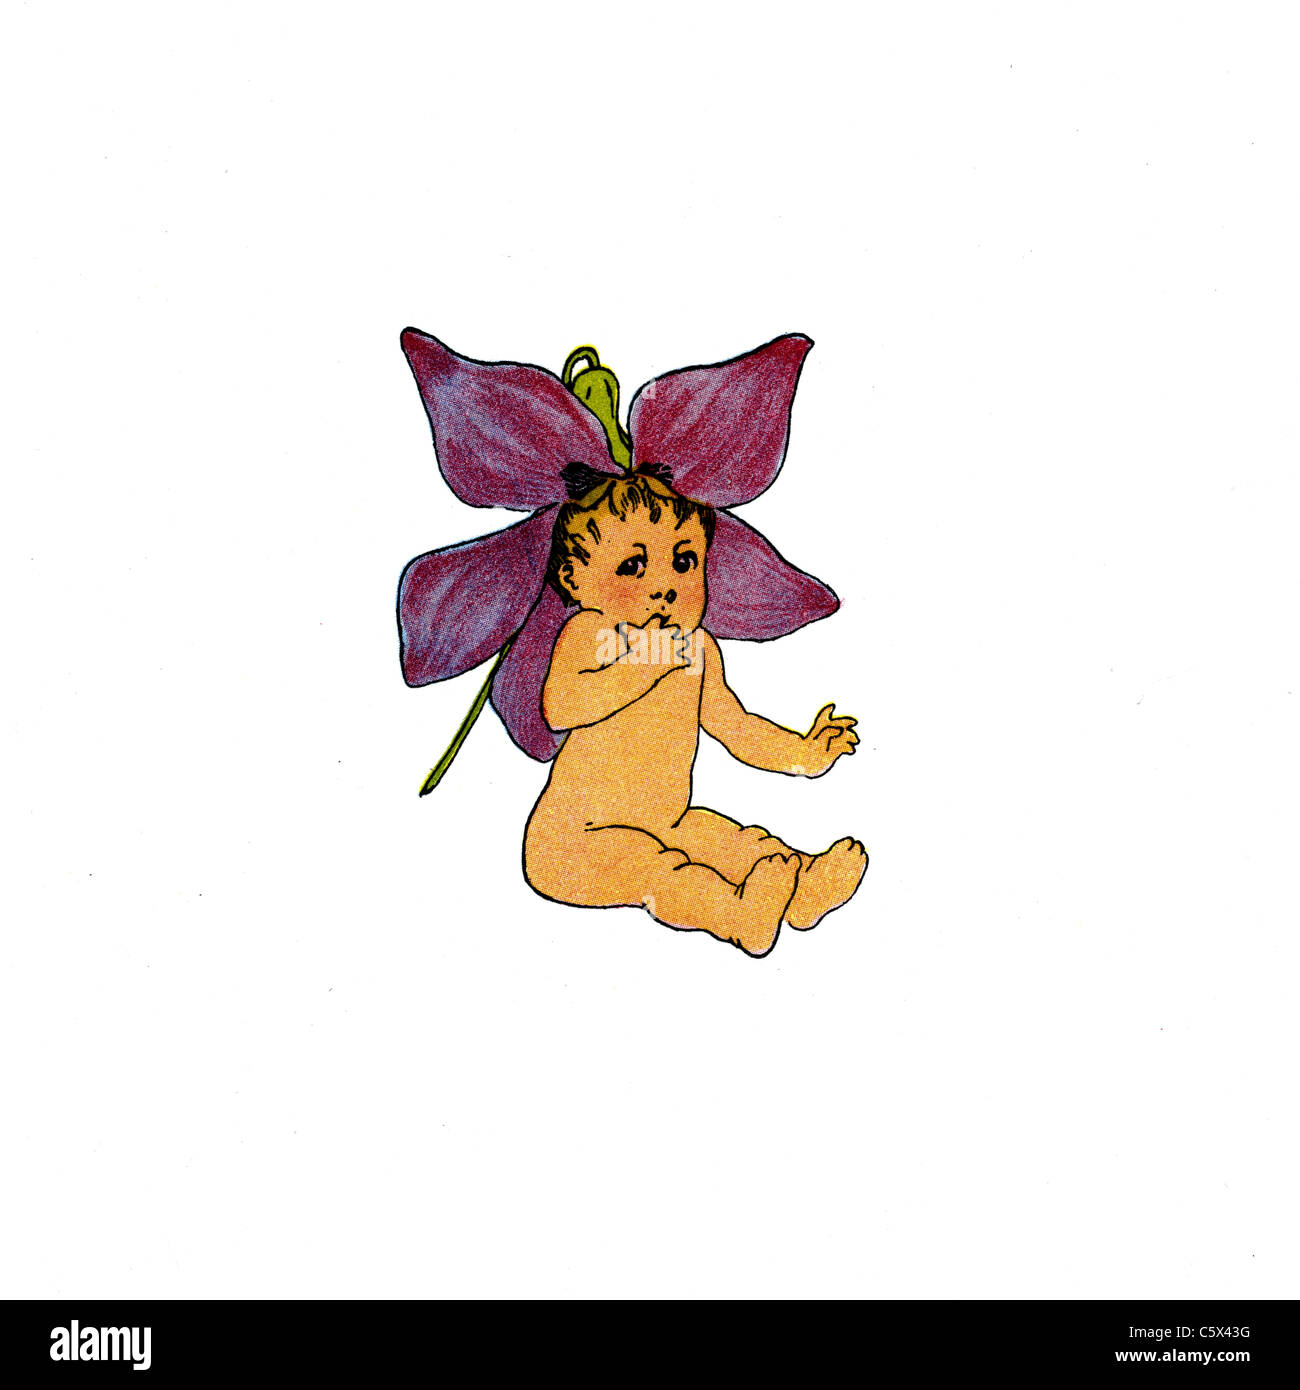 Fleur Violette - Illustration de l'enfant à partir d'un livre ancien Banque D'Images